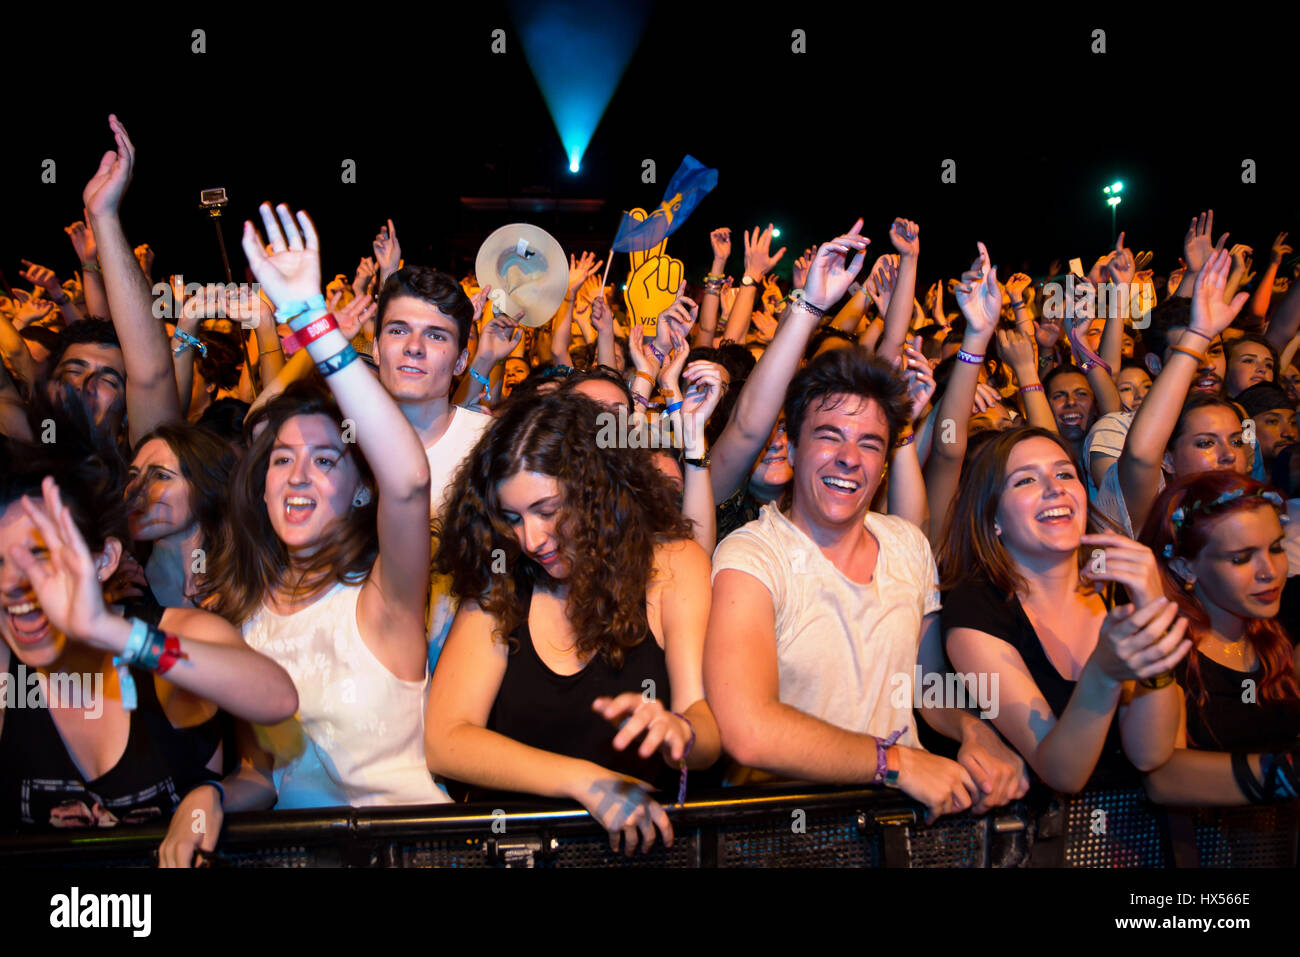 BENICASSIM, ESPAGNE - 16 juil : foule lors d'un concert au Festival de Musique le 16 juillet 2015 à Benicassim, Espagne. Banque D'Images